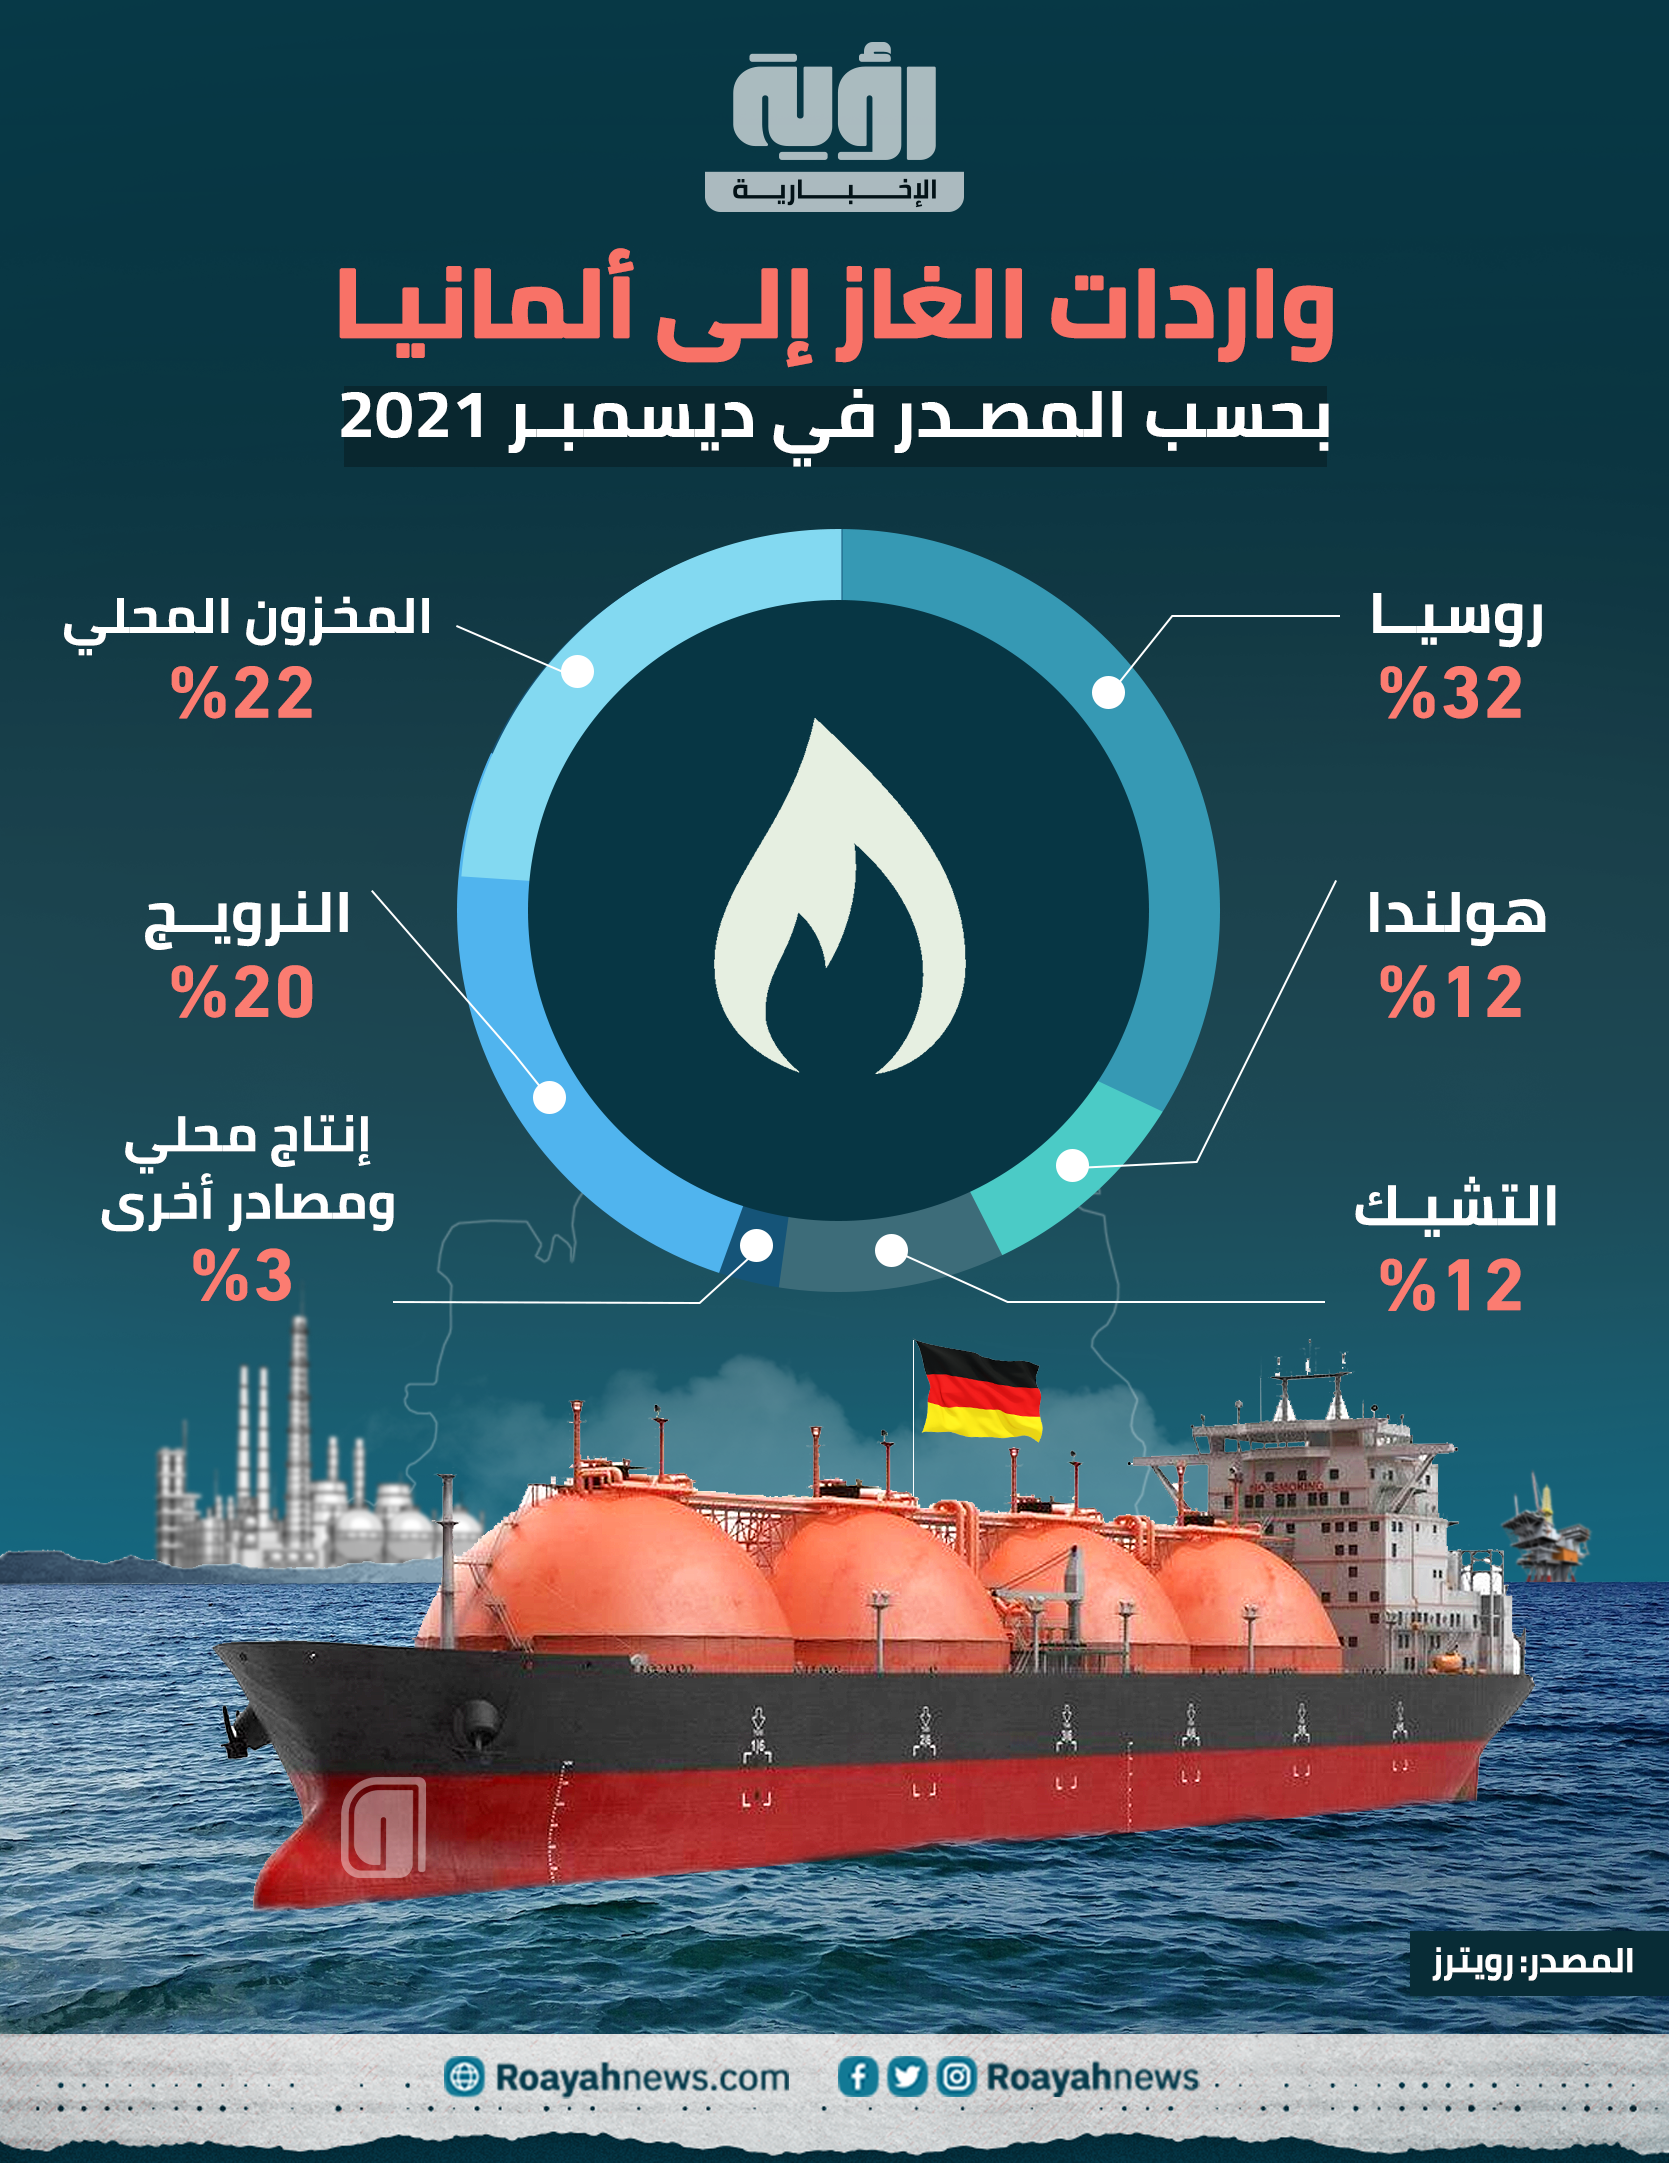 واردات الغاز إلى ألمانيا بحسب المصدر في ديسمبر 2021